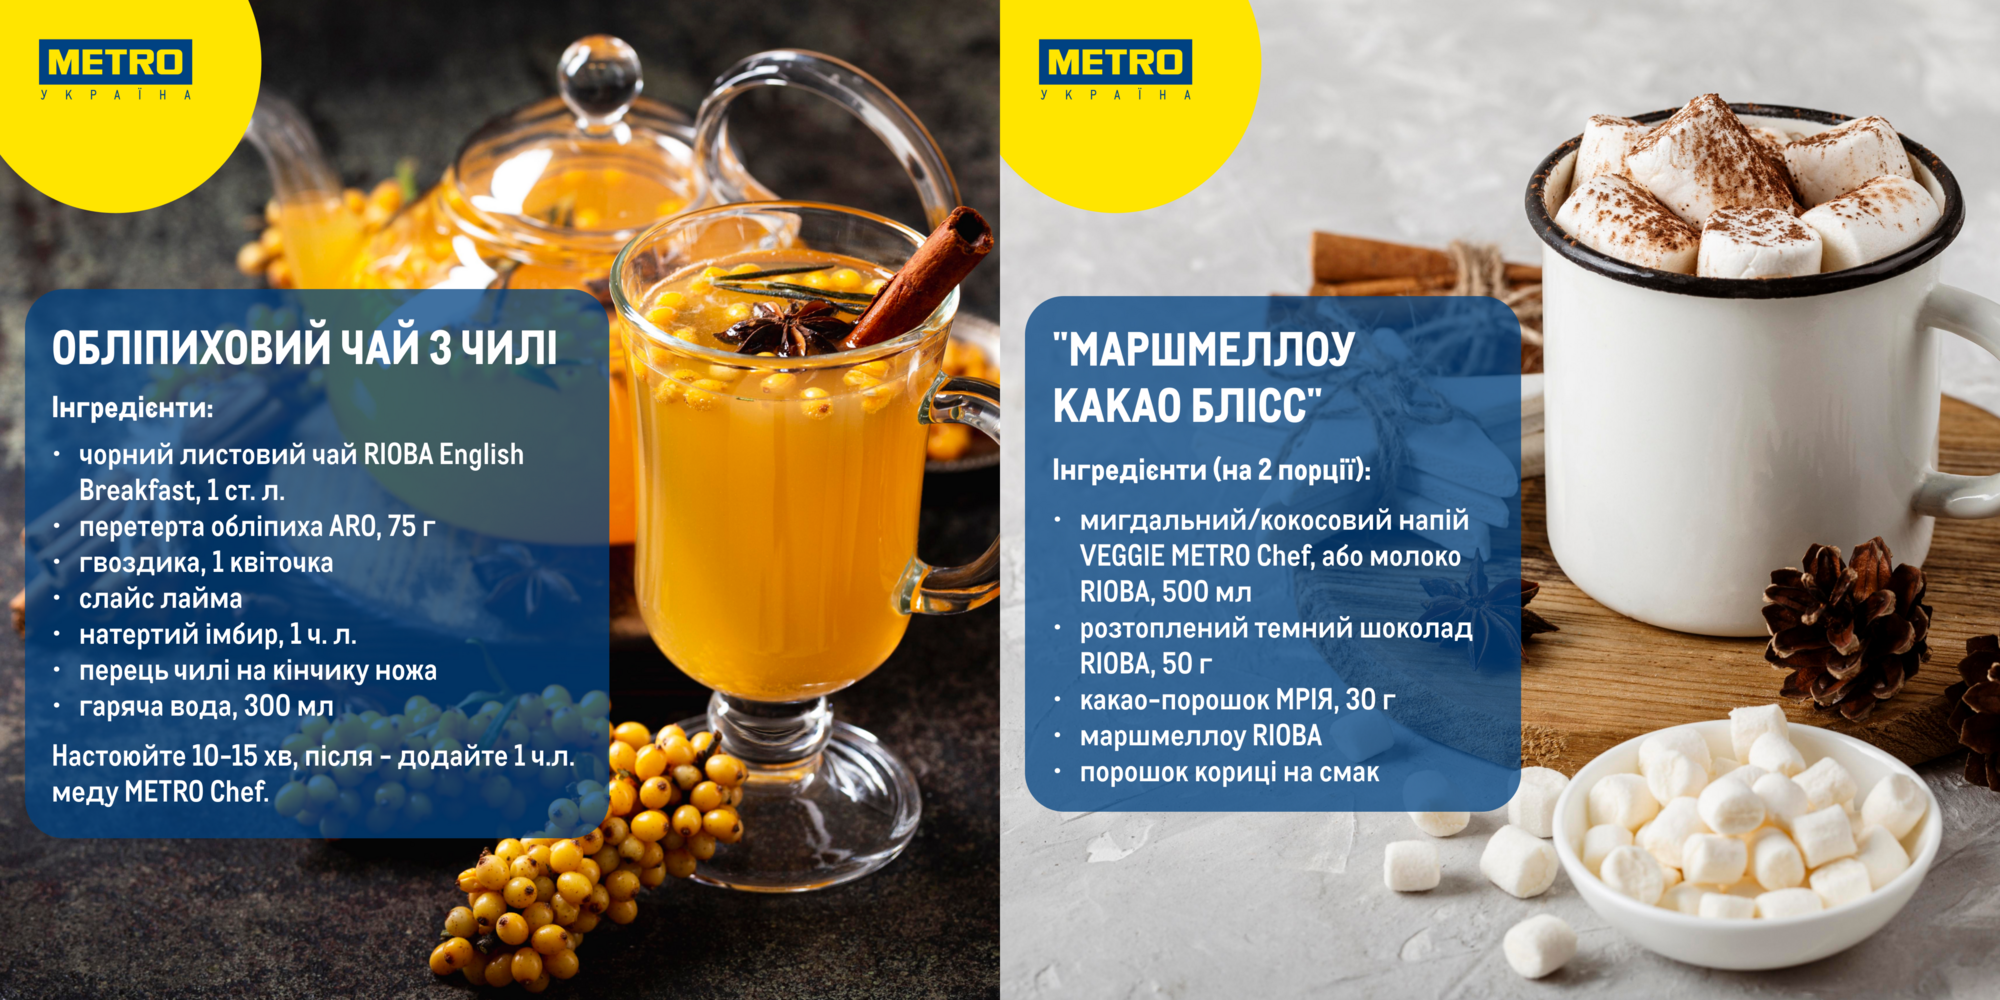 Кубики манго и облепиха из чили: 6 необычных рецептов горячих напитков, которые подарят тепло и уют зимой